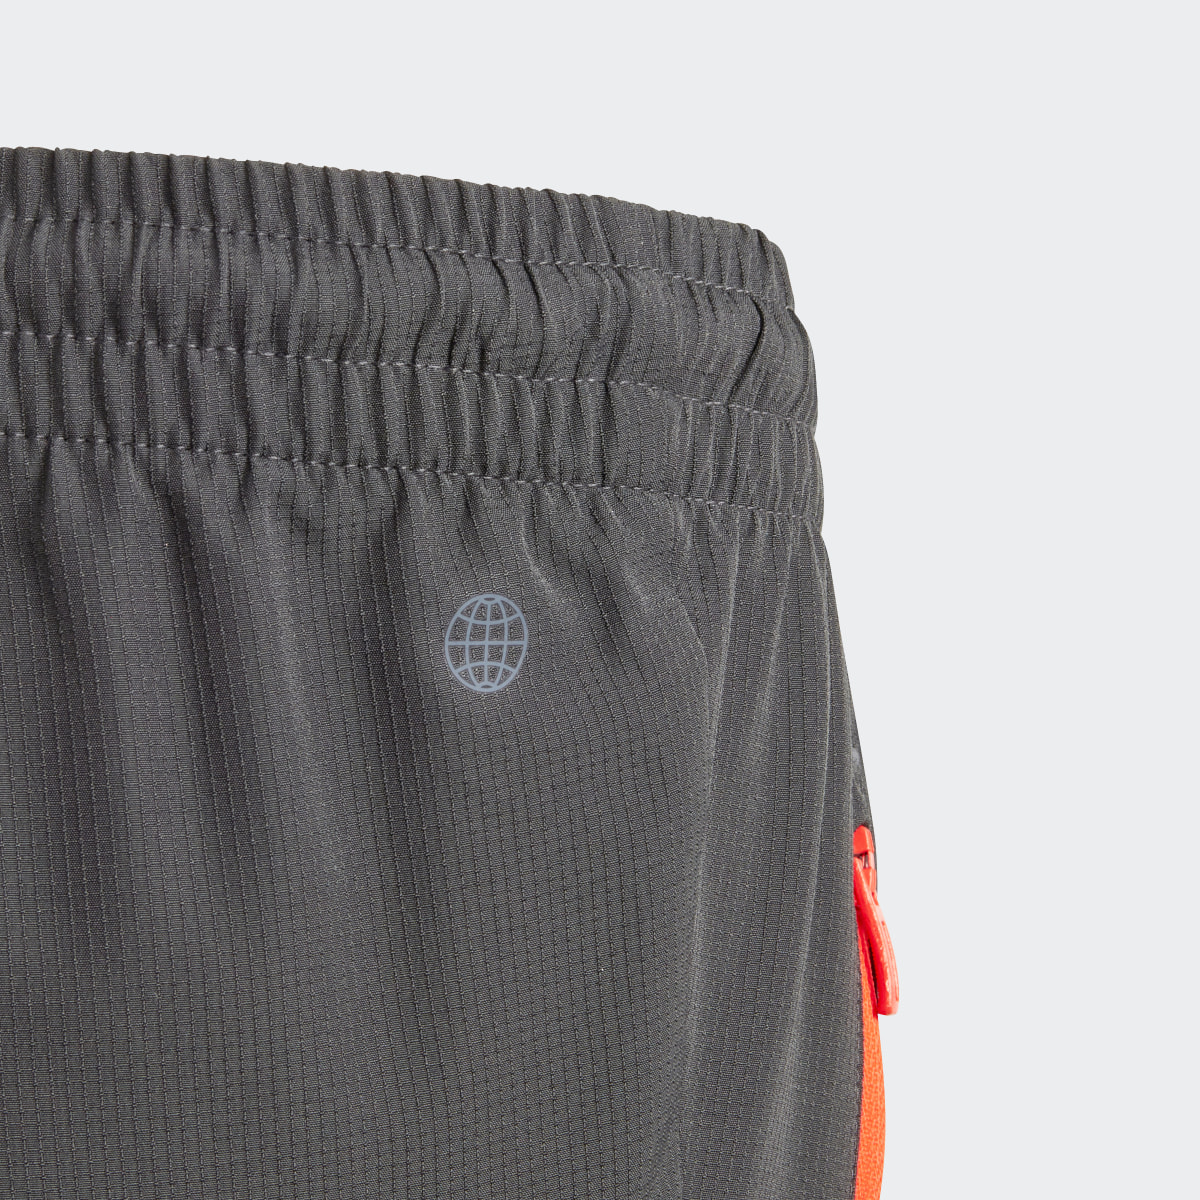 Adidas City Escape Casual Woven Cargo Pocket Pants. 7